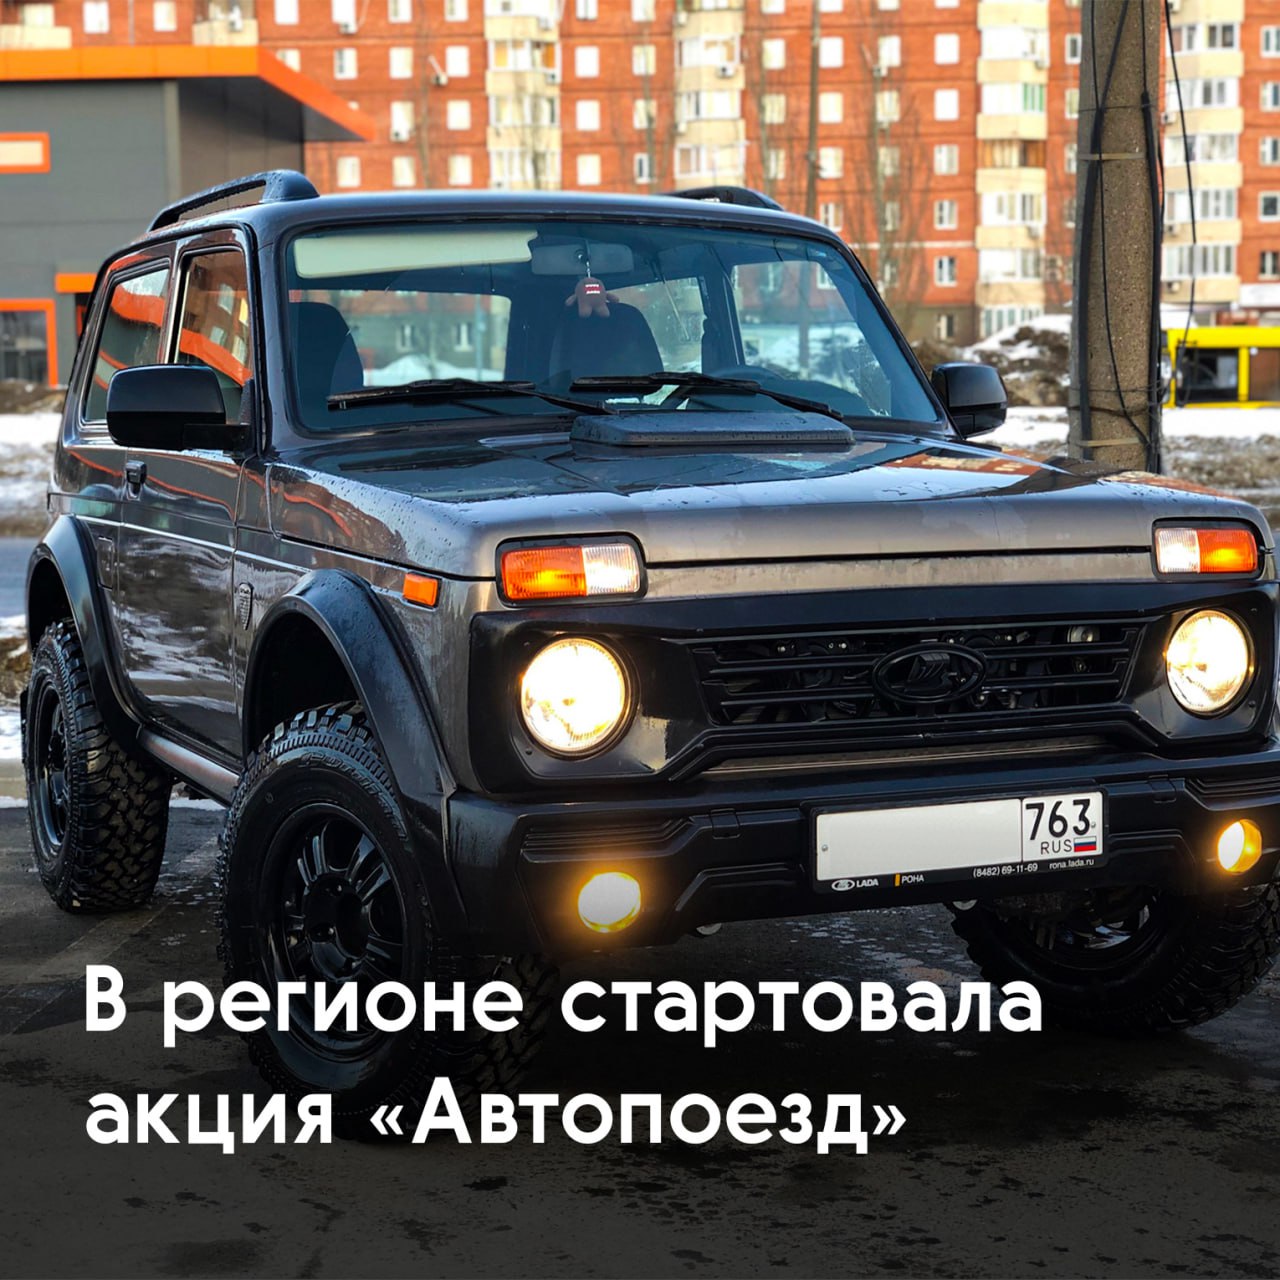 Самарцев приглашают принять участие в региональной акции "Автопоезд"